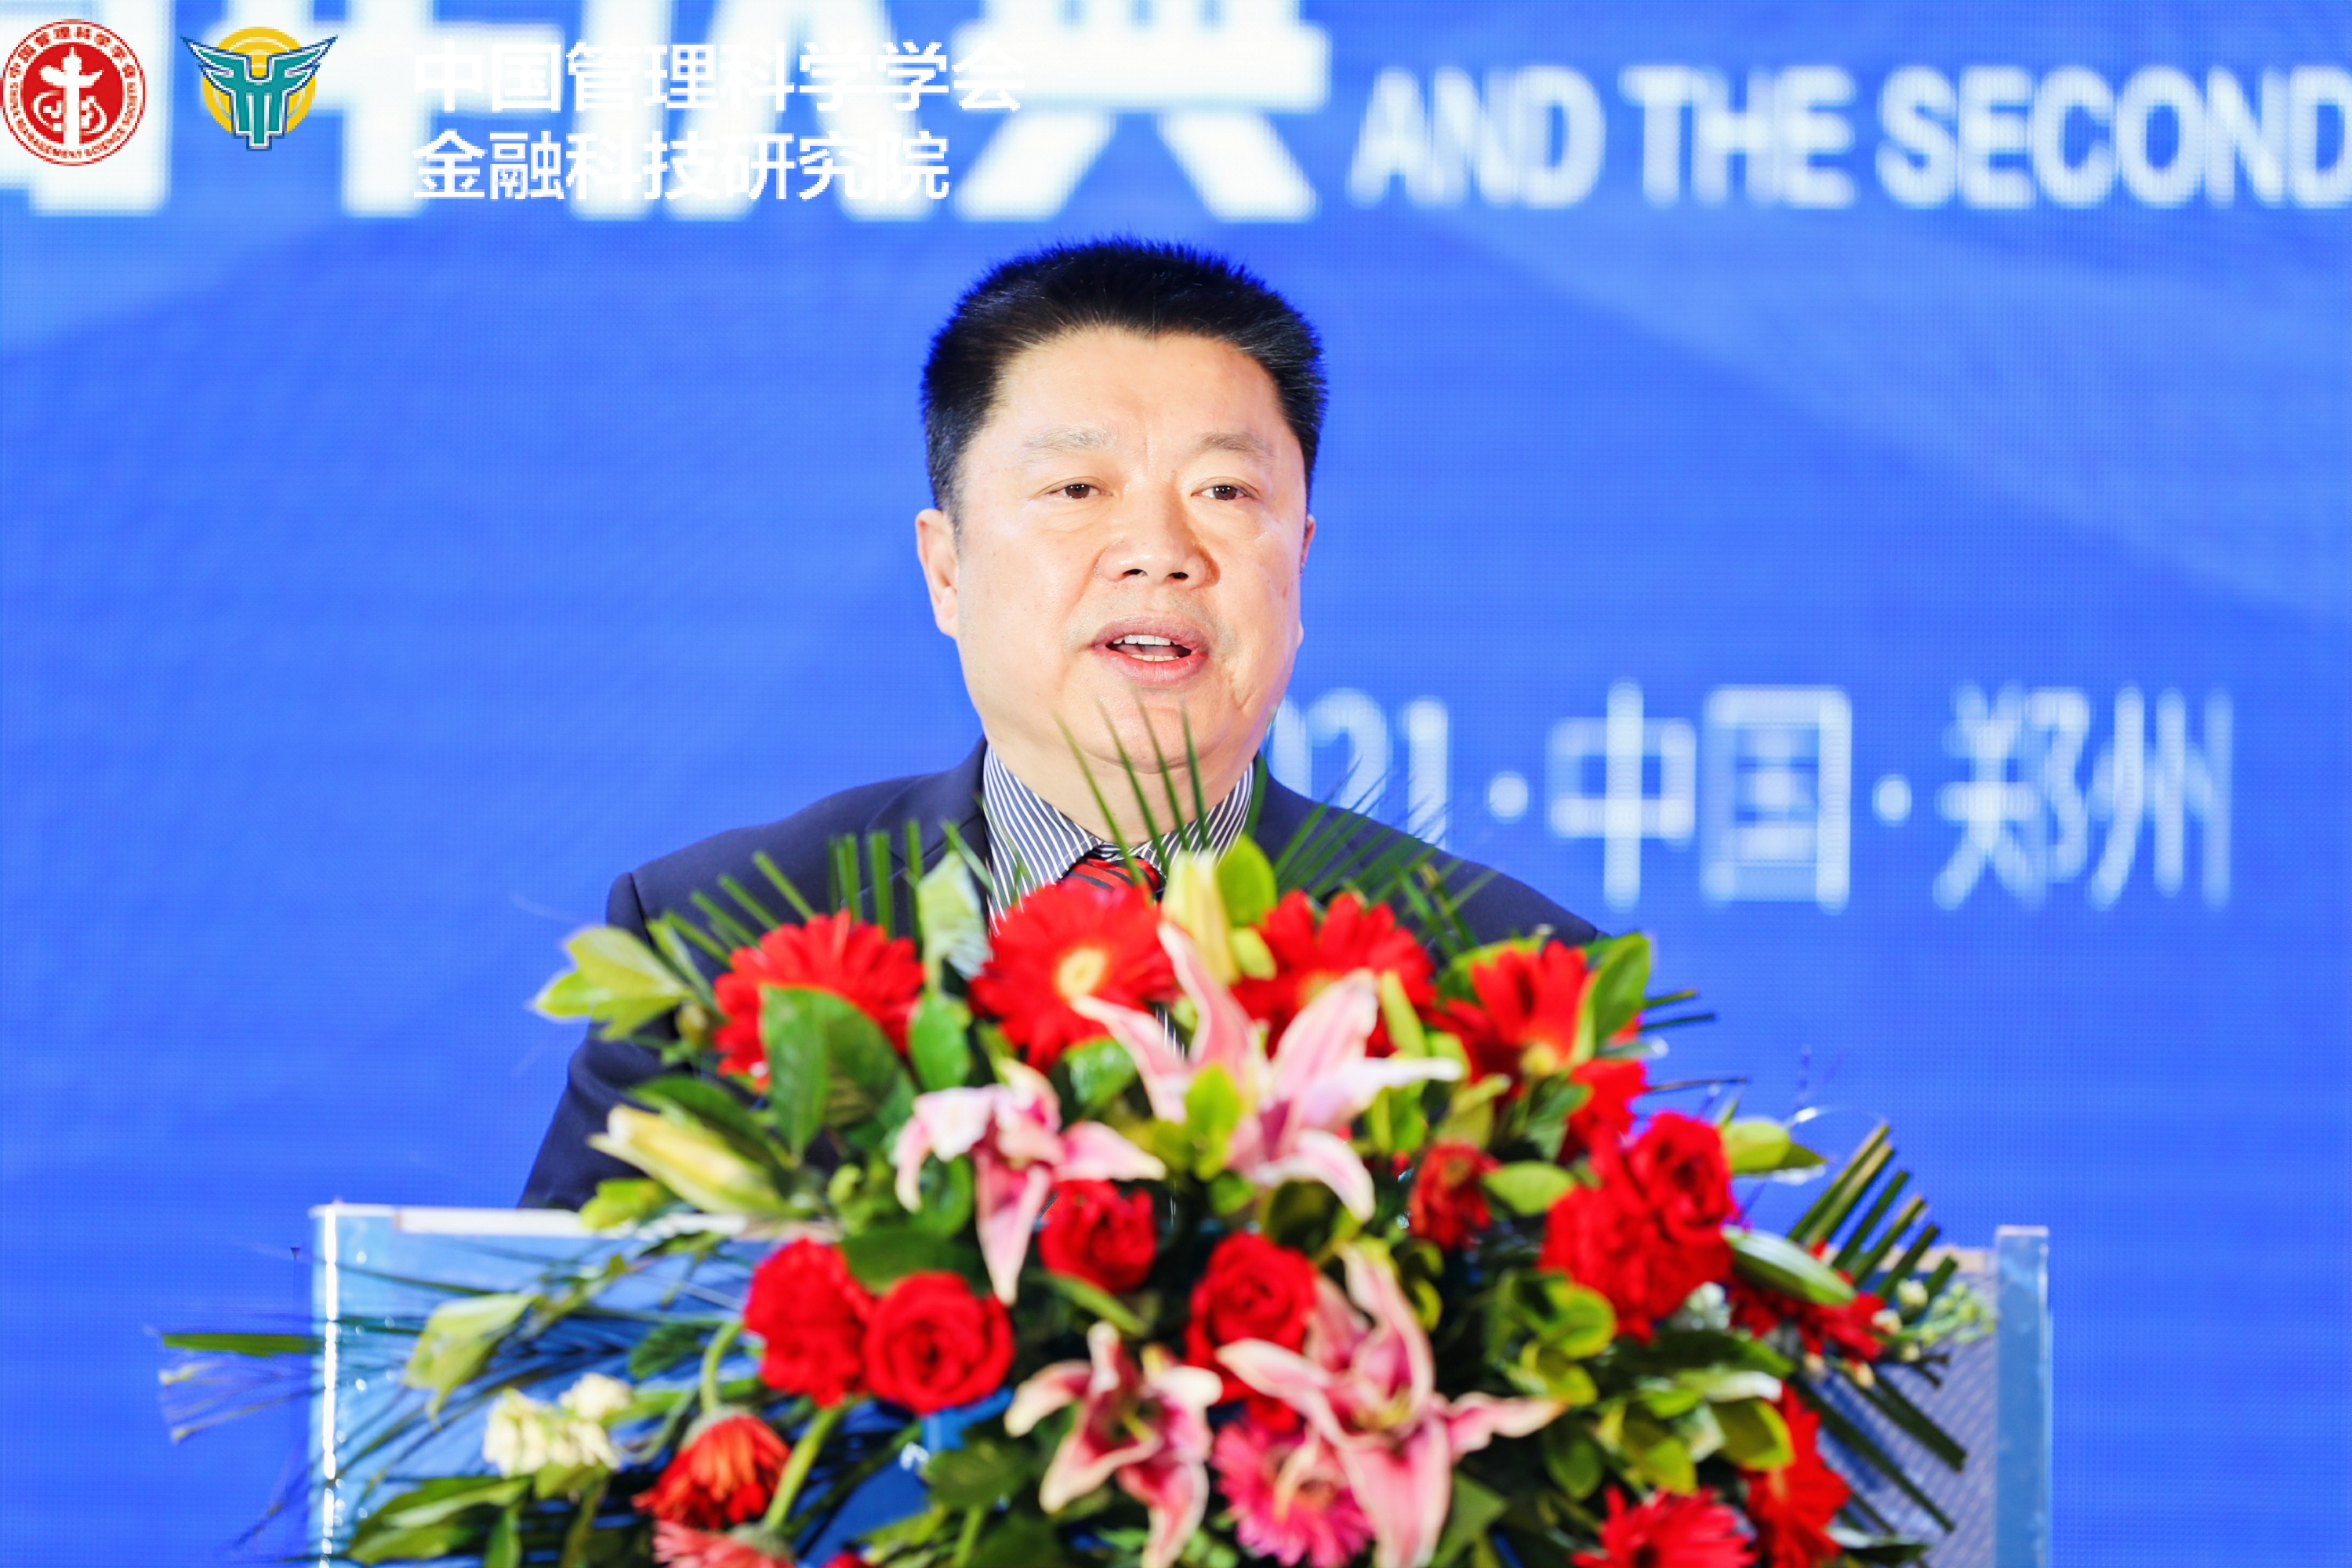 赋能数字经济加速度 中国金融科技研究院首届区块链赋能主题峰会在郑召开